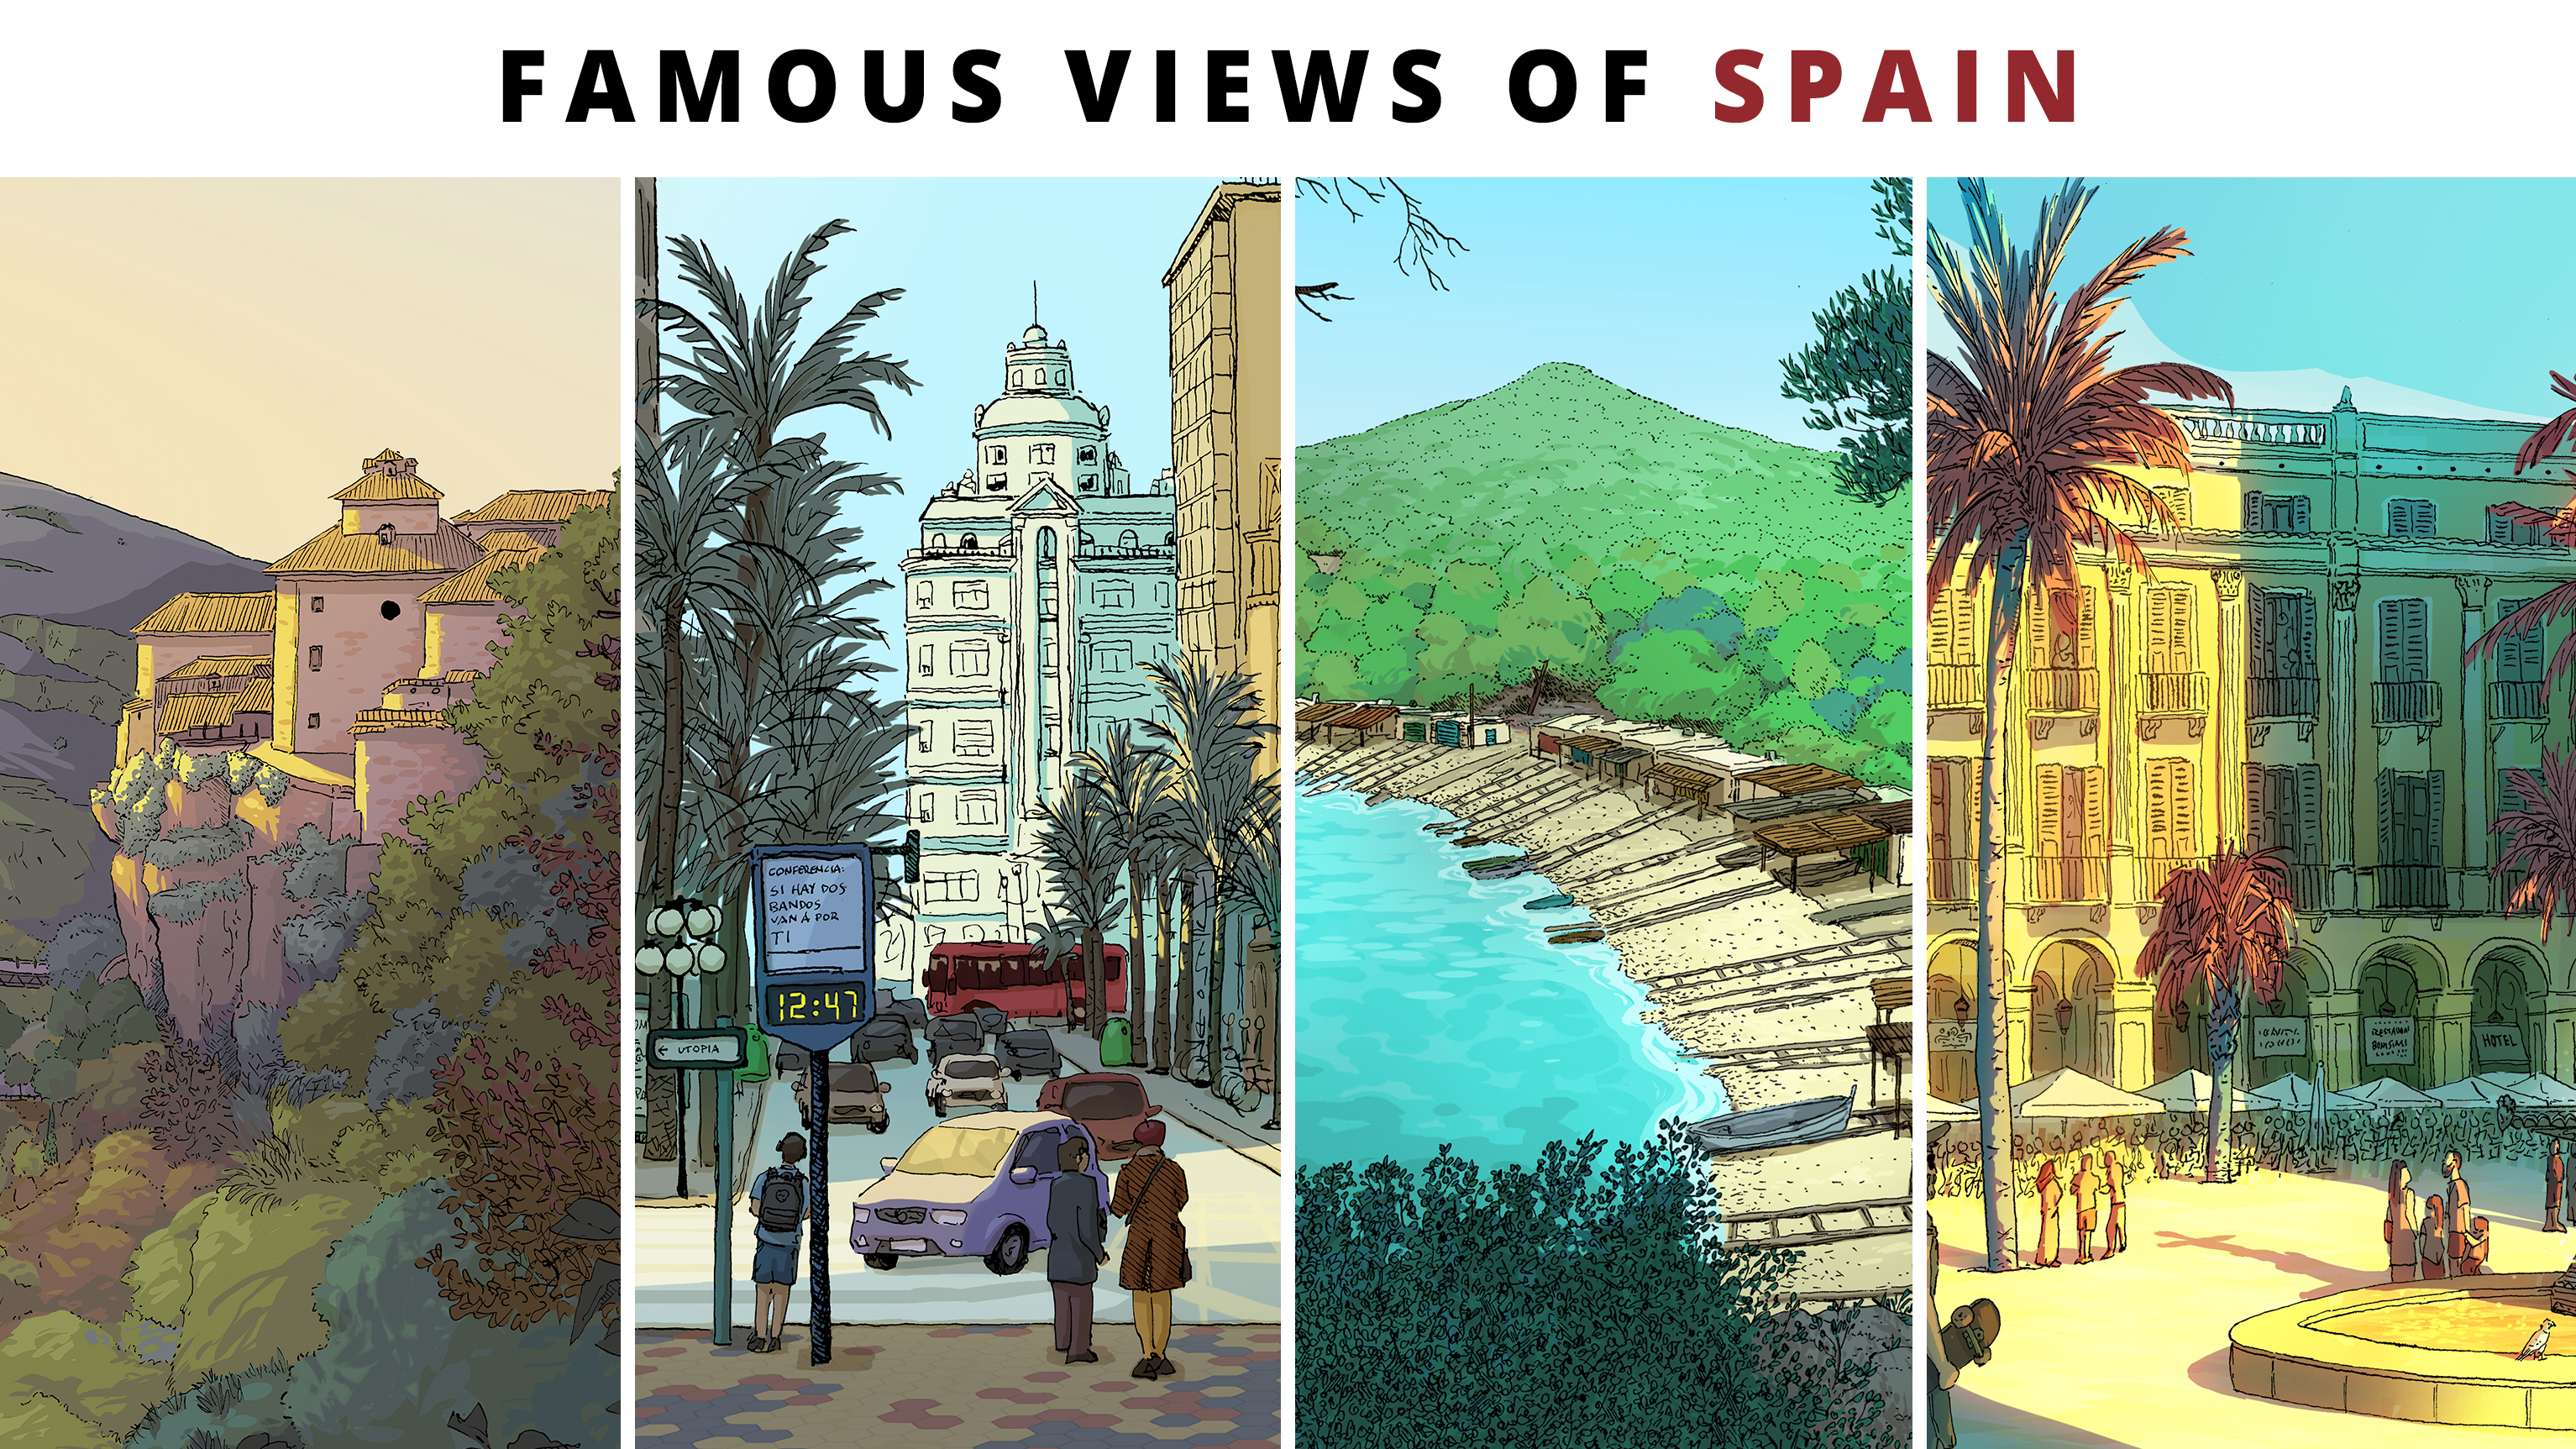 Imágenes famosas vistas de España. Ilustraciones del proyecto